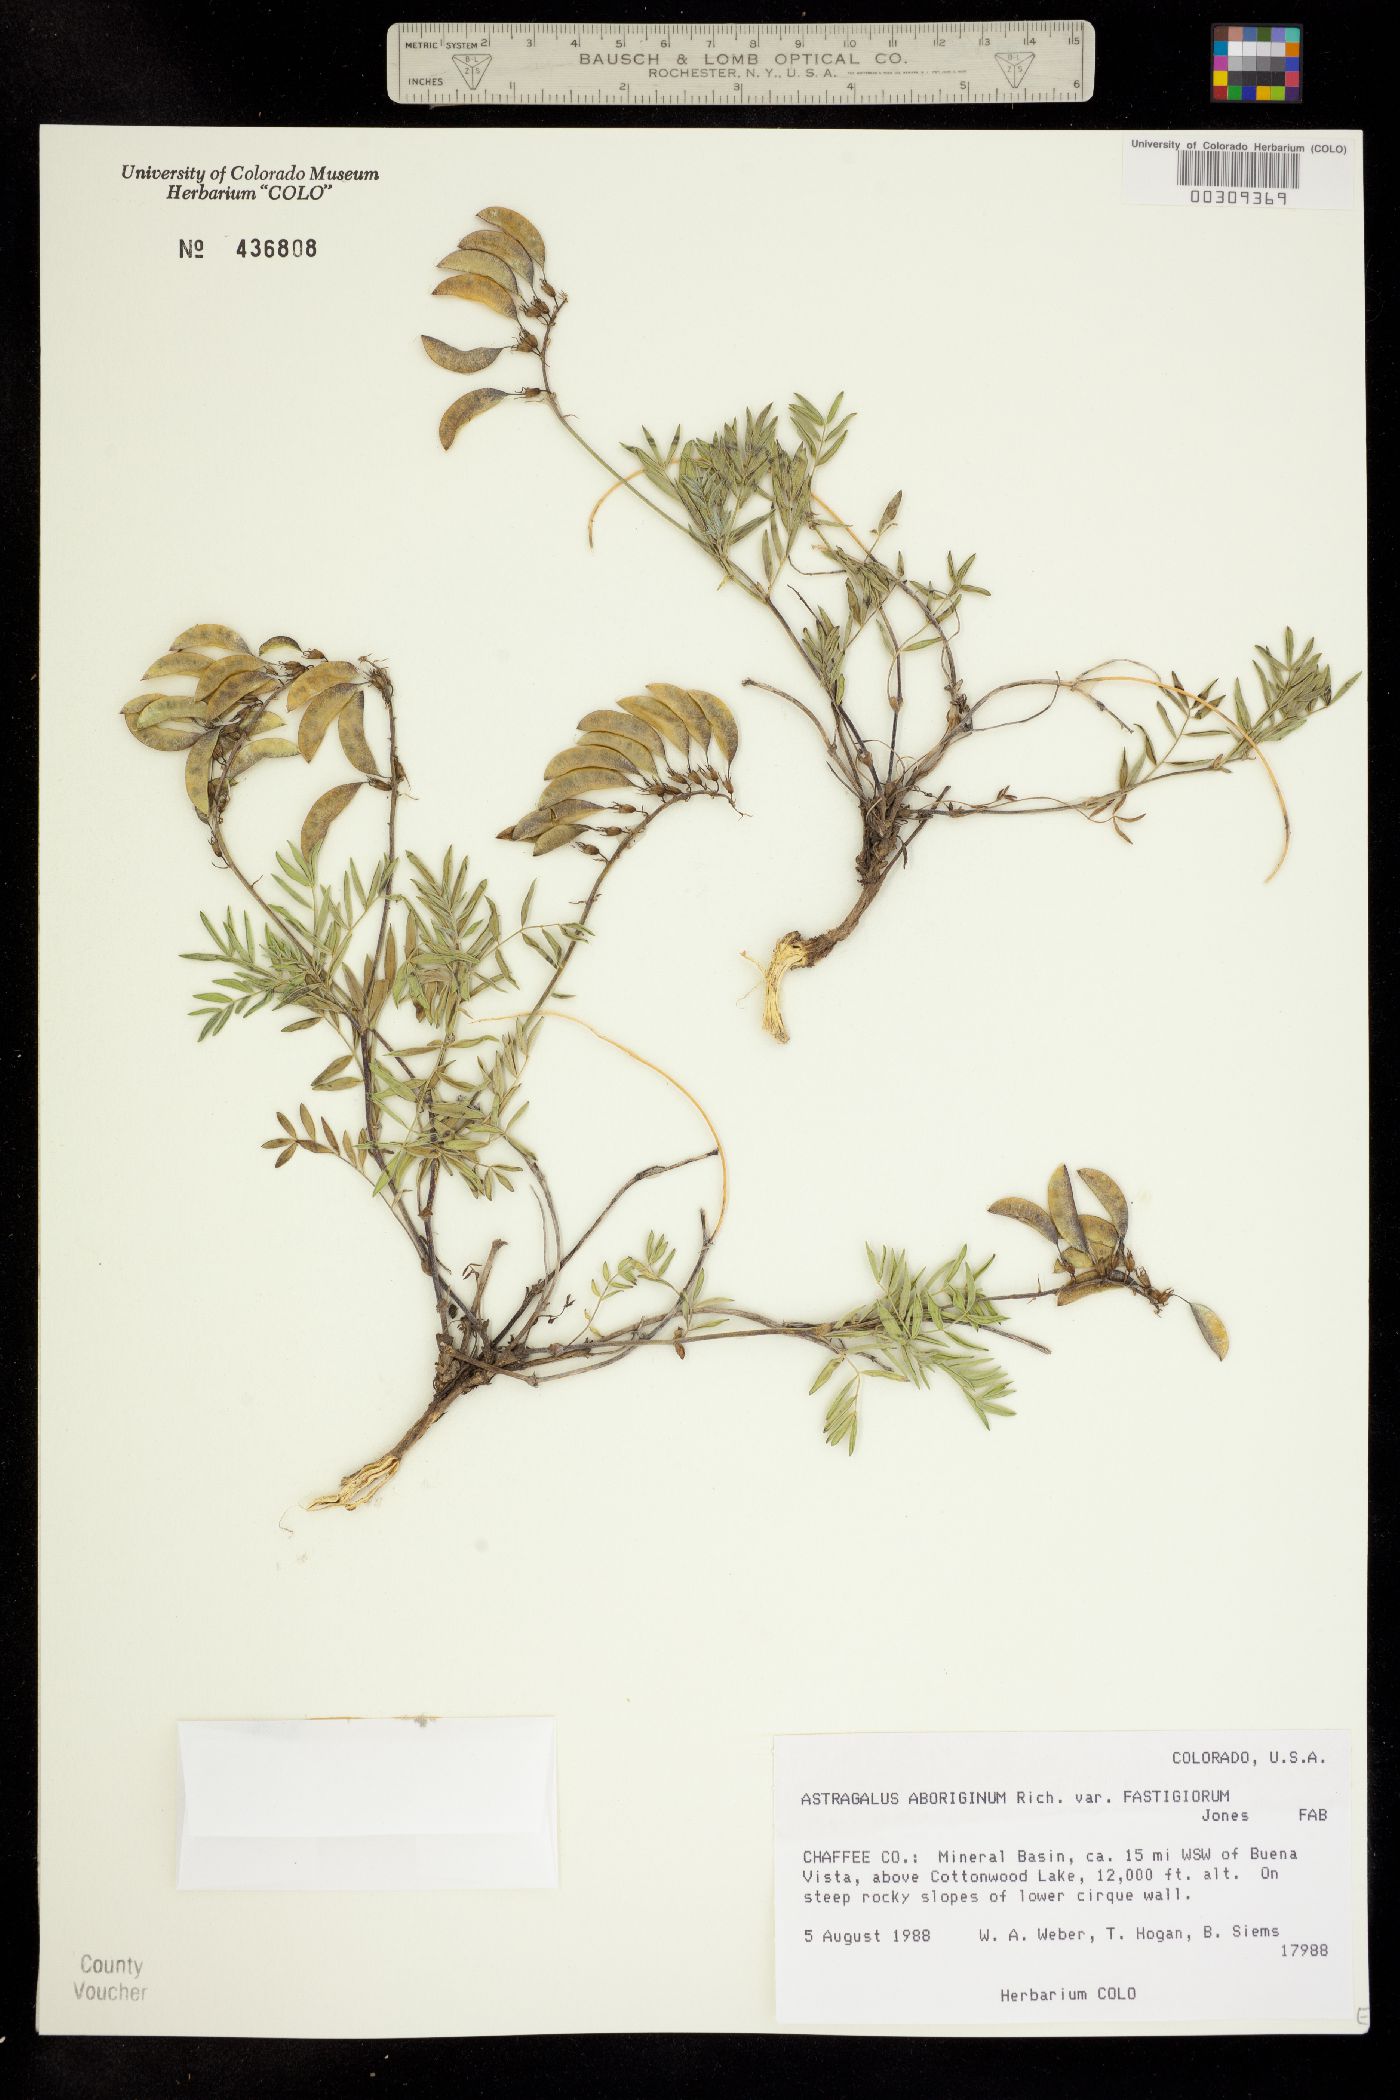 Astragalus aboriginum var. fastigiorum image